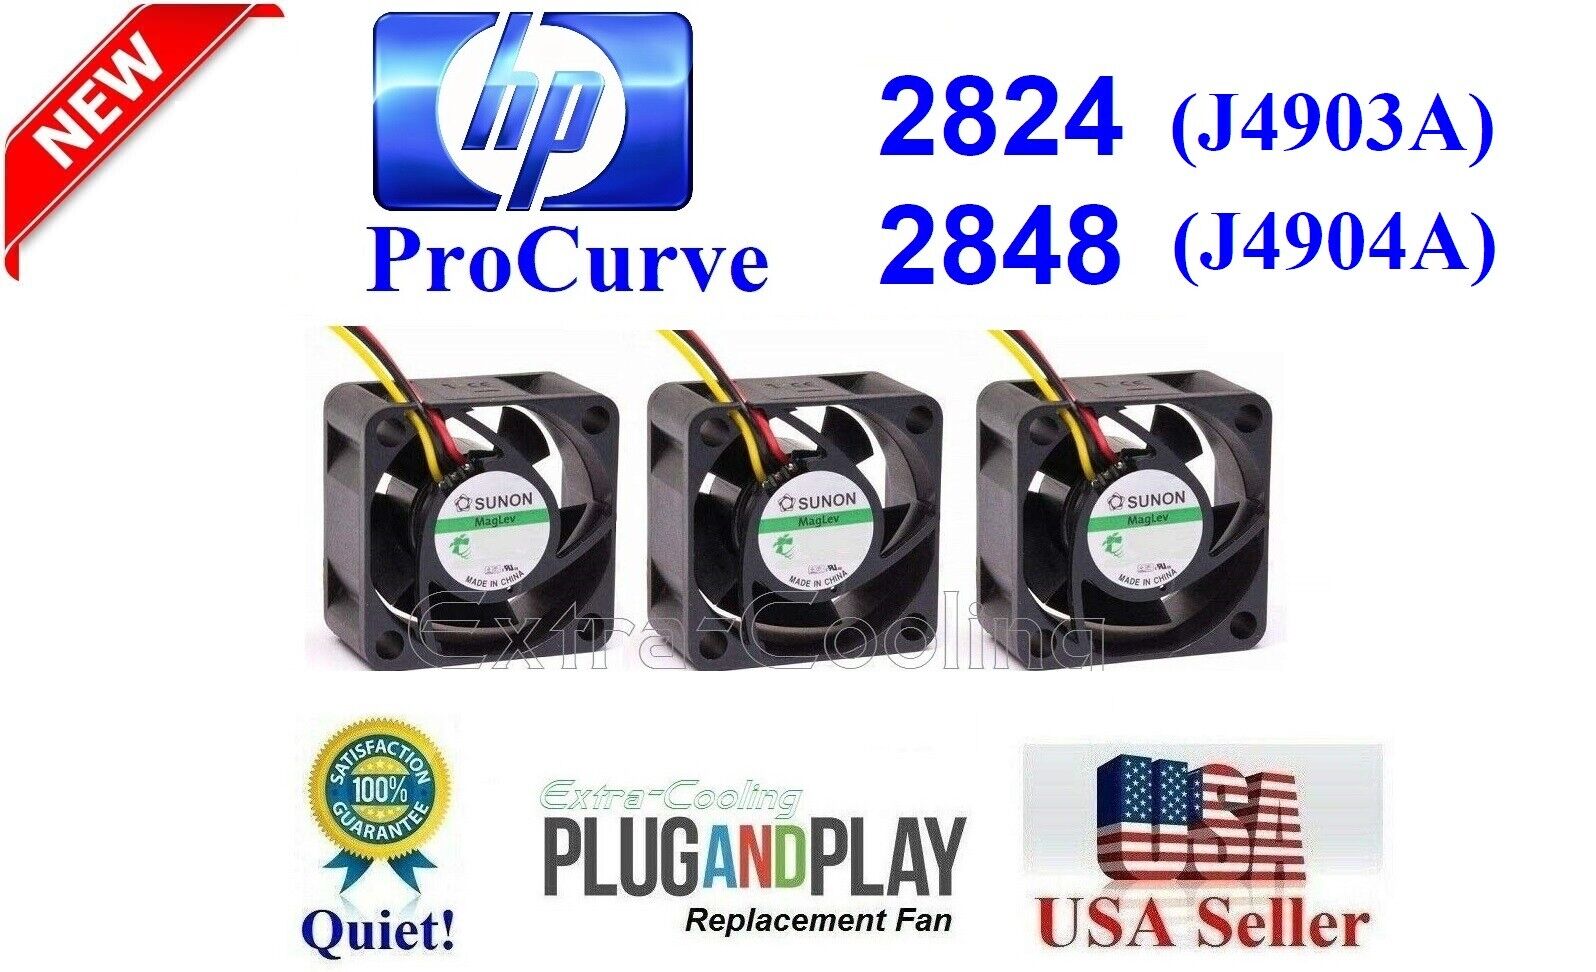 Quiet HP ProCurve 2824 2848 Fan Kit, Lot 3x low noise Fans Best Home Networking